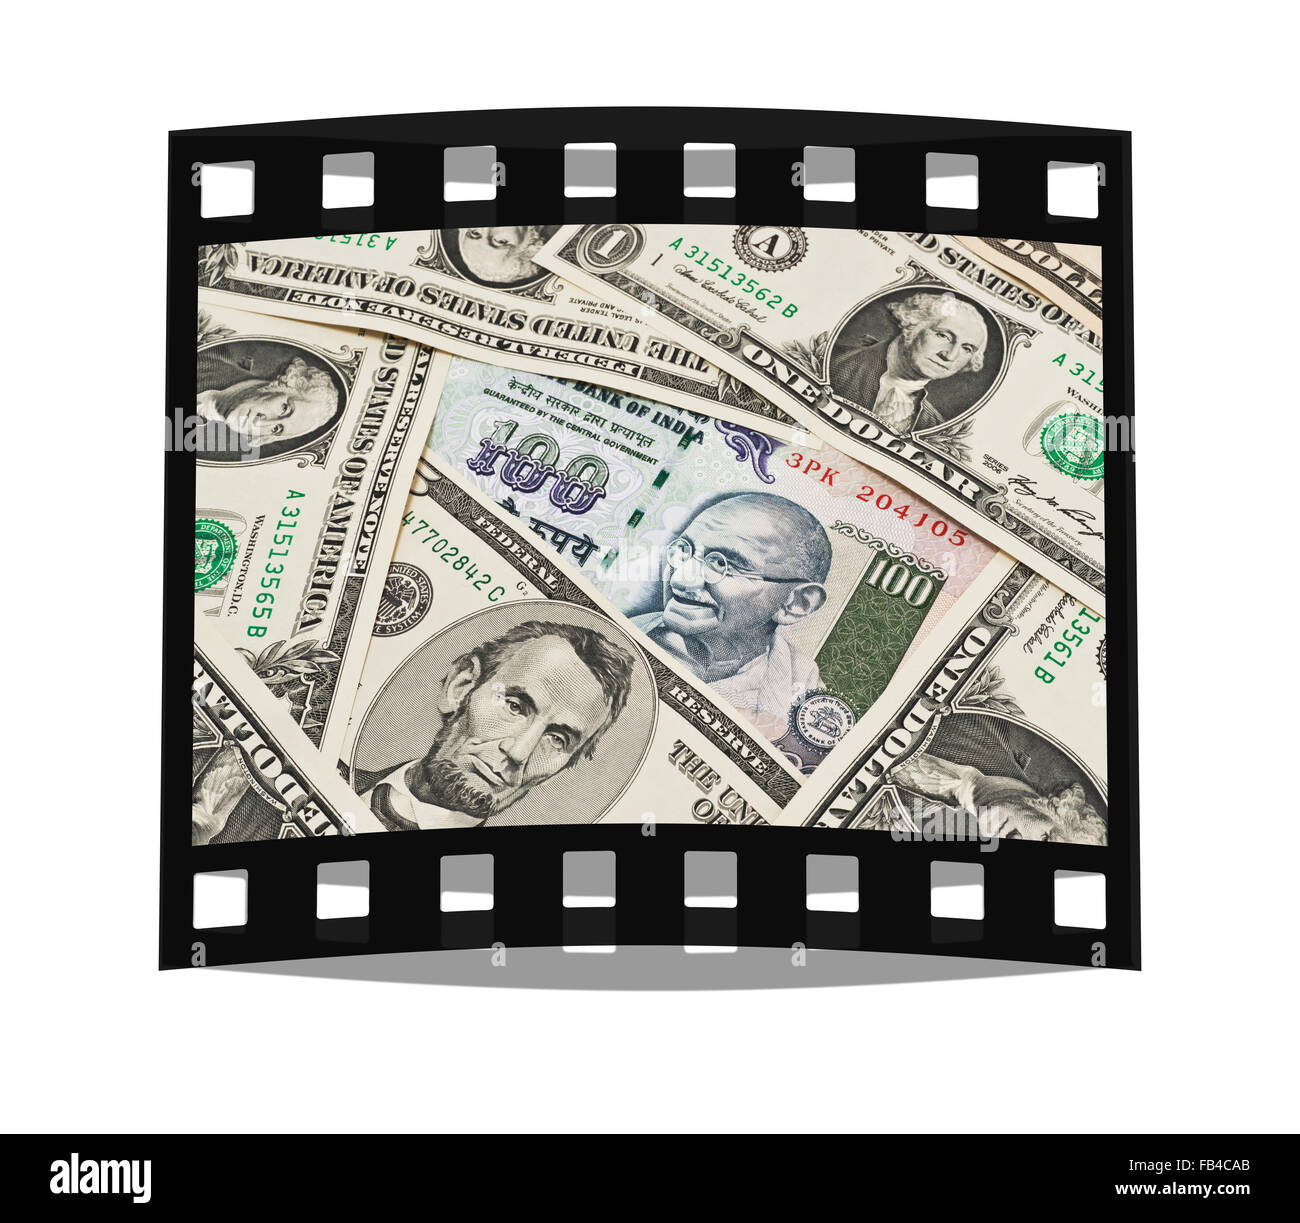 Molti Stati Uniti Le fatture del dollaro affiancati. Al centro si trova un Indian 100 rupie bill con il ritratto del Mahatma Gandhi Foto Stock